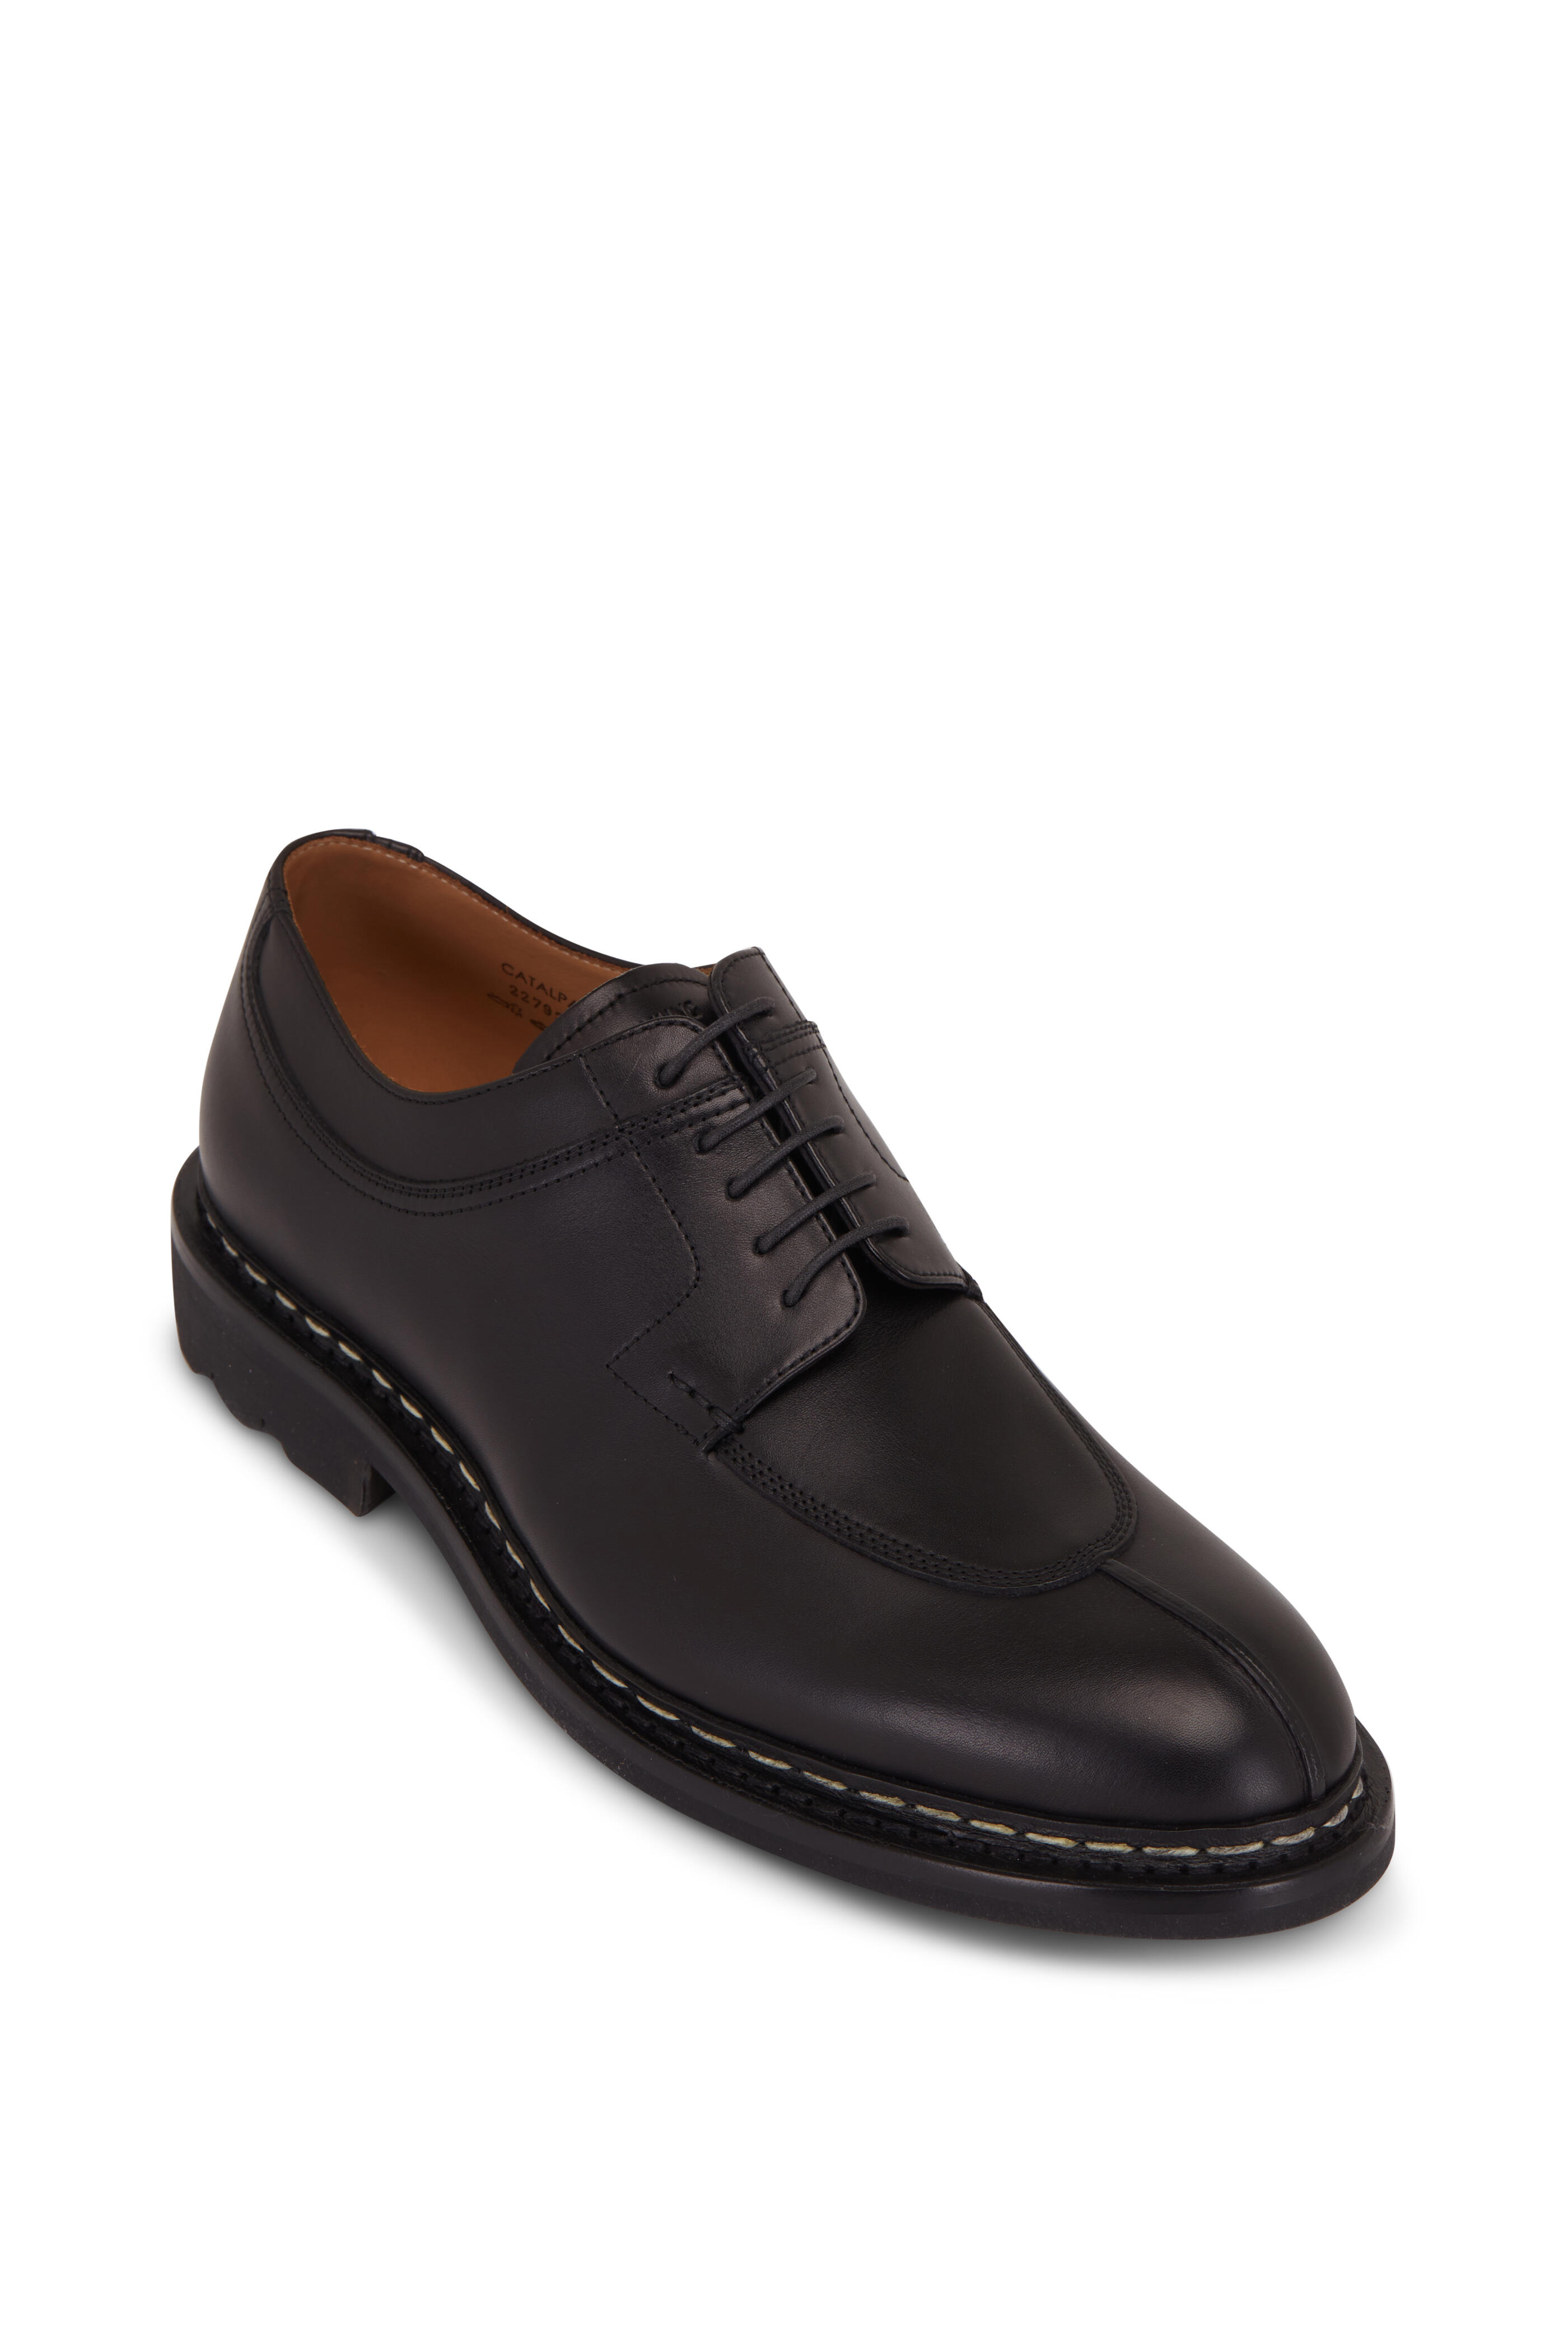 Heschung - Catalpa Anilcalf Noir Dress Shoe | Mitchell Stores